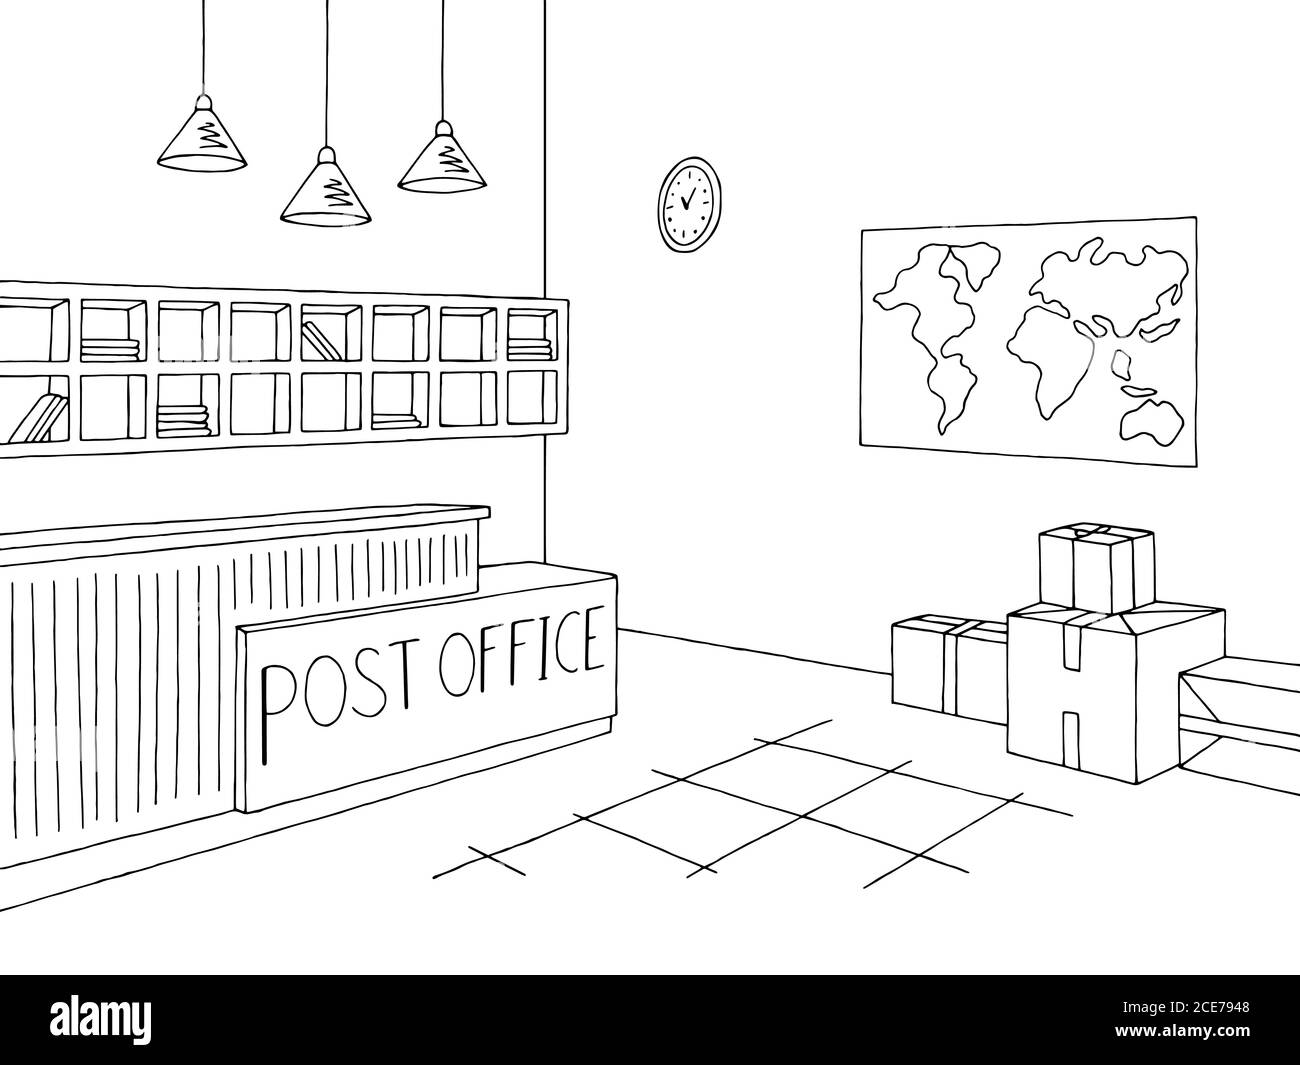 Immagine grafica interna dell'ufficio postale in bianco nero Illustrazione Vettoriale